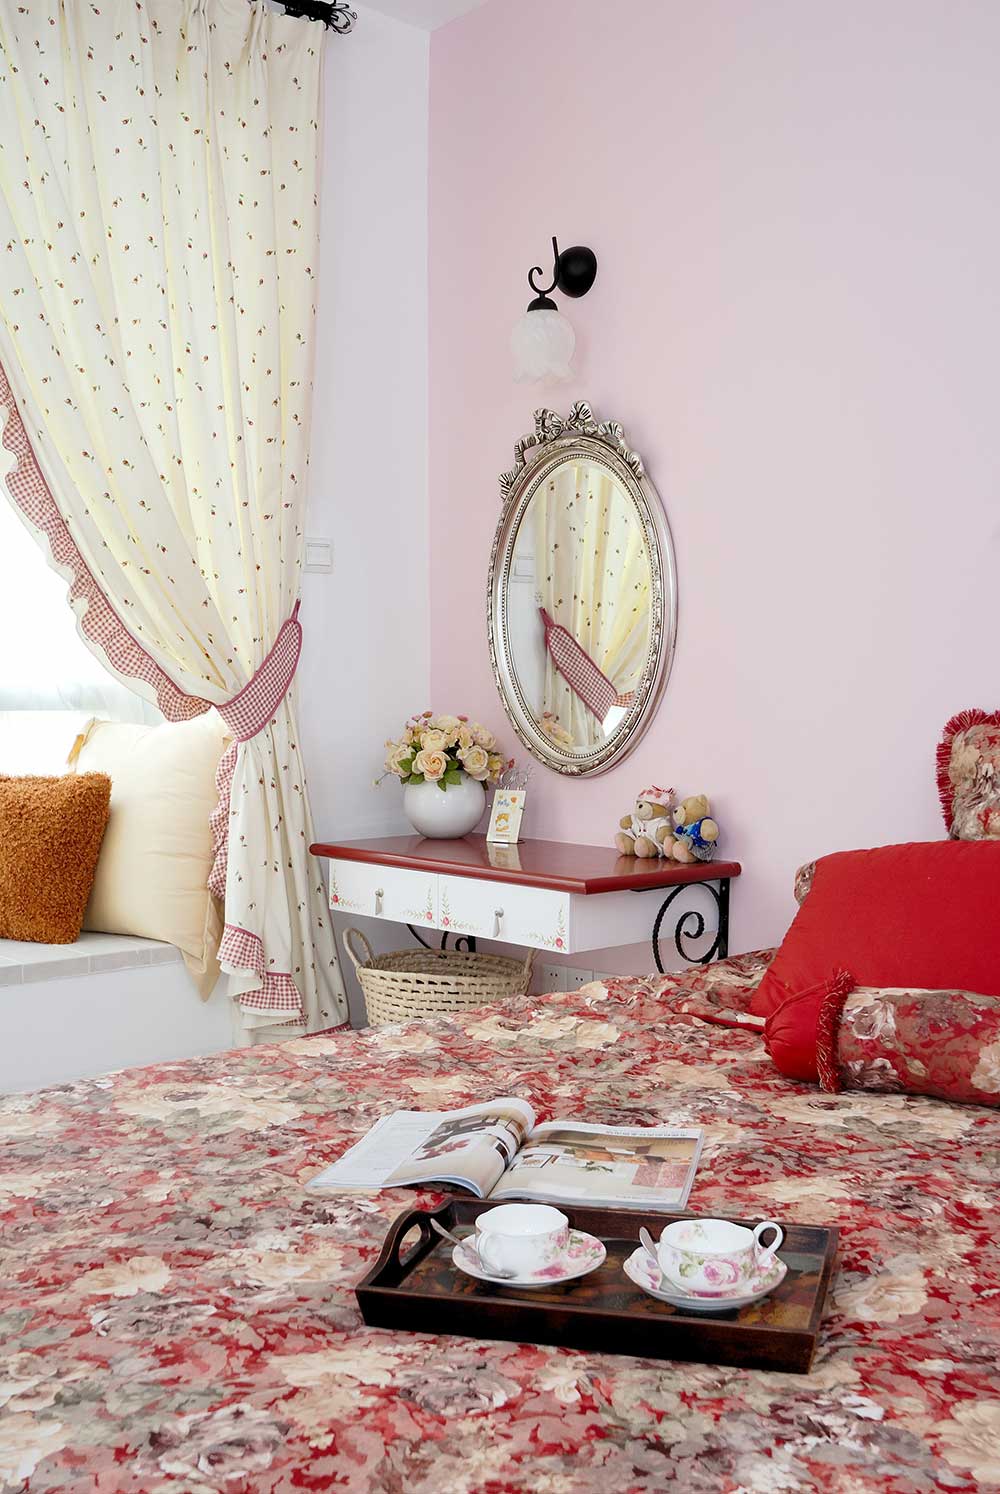 公主房少不了粉色的装饰，稍显艳丽的红色床面装饰不显俗气。